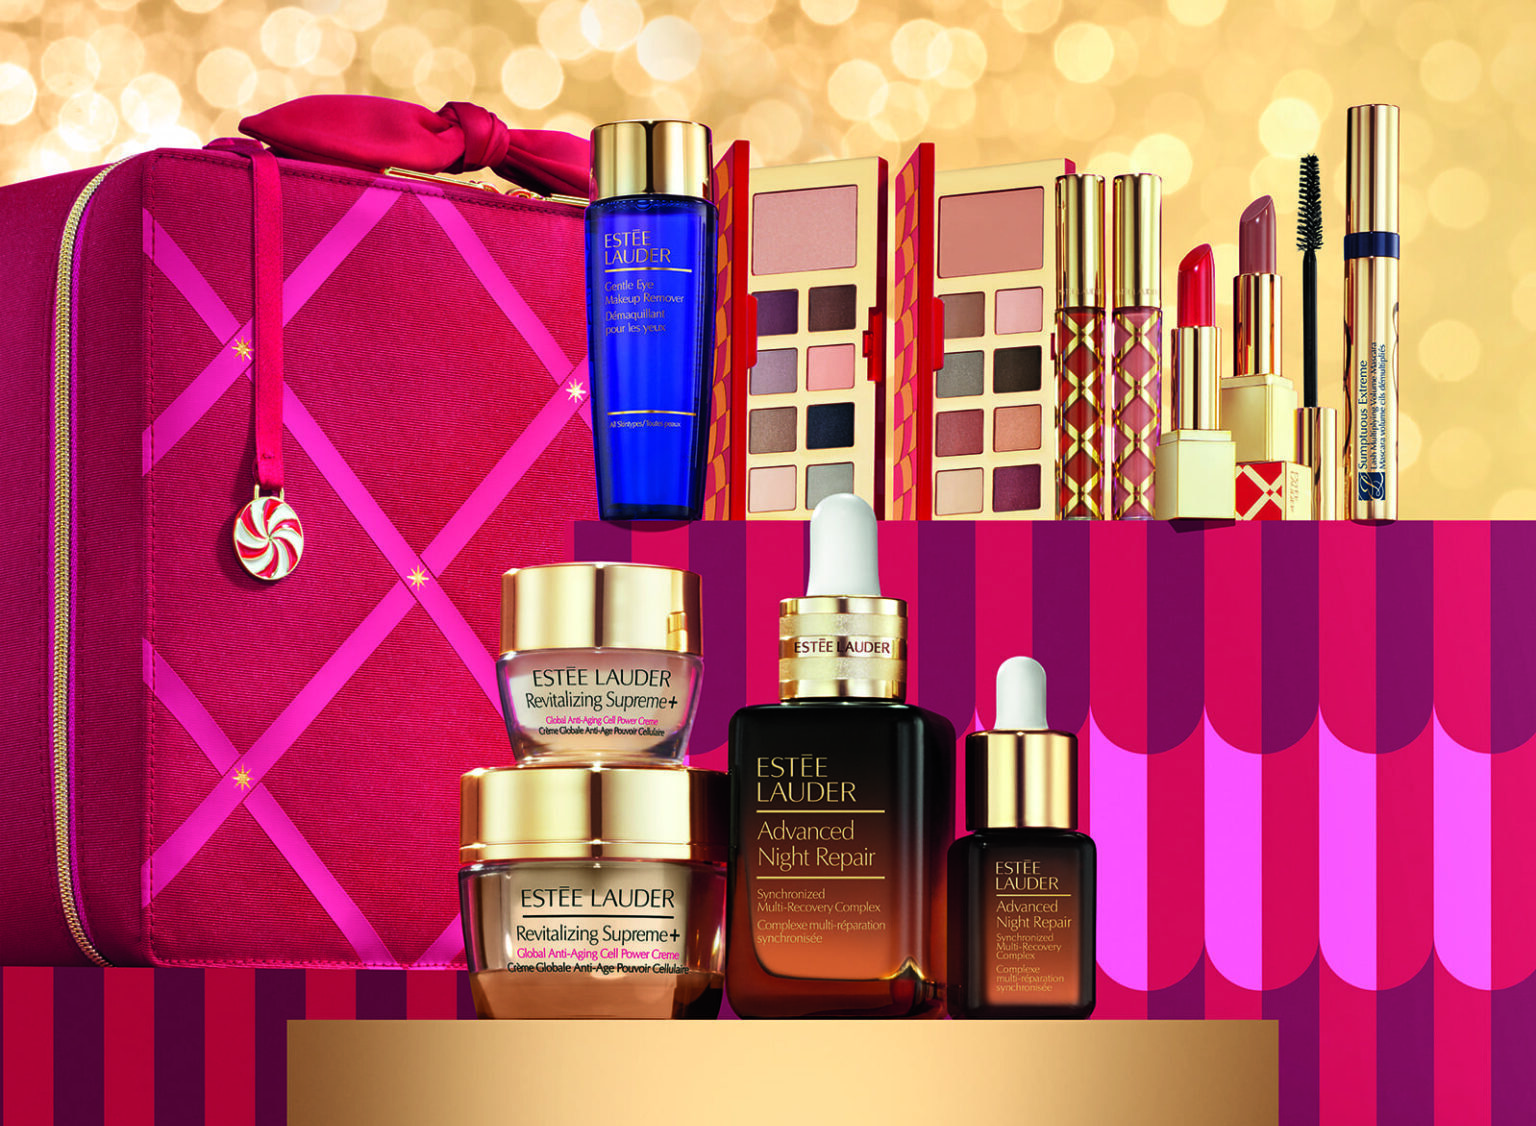 IMPERDIBLE! La maleta de maquillaje Estée Lauder con un 71% de descuento y  con un set Re-nutriv de regalo exclusivo para ustedes (stock limitado) |  Effortless Chic